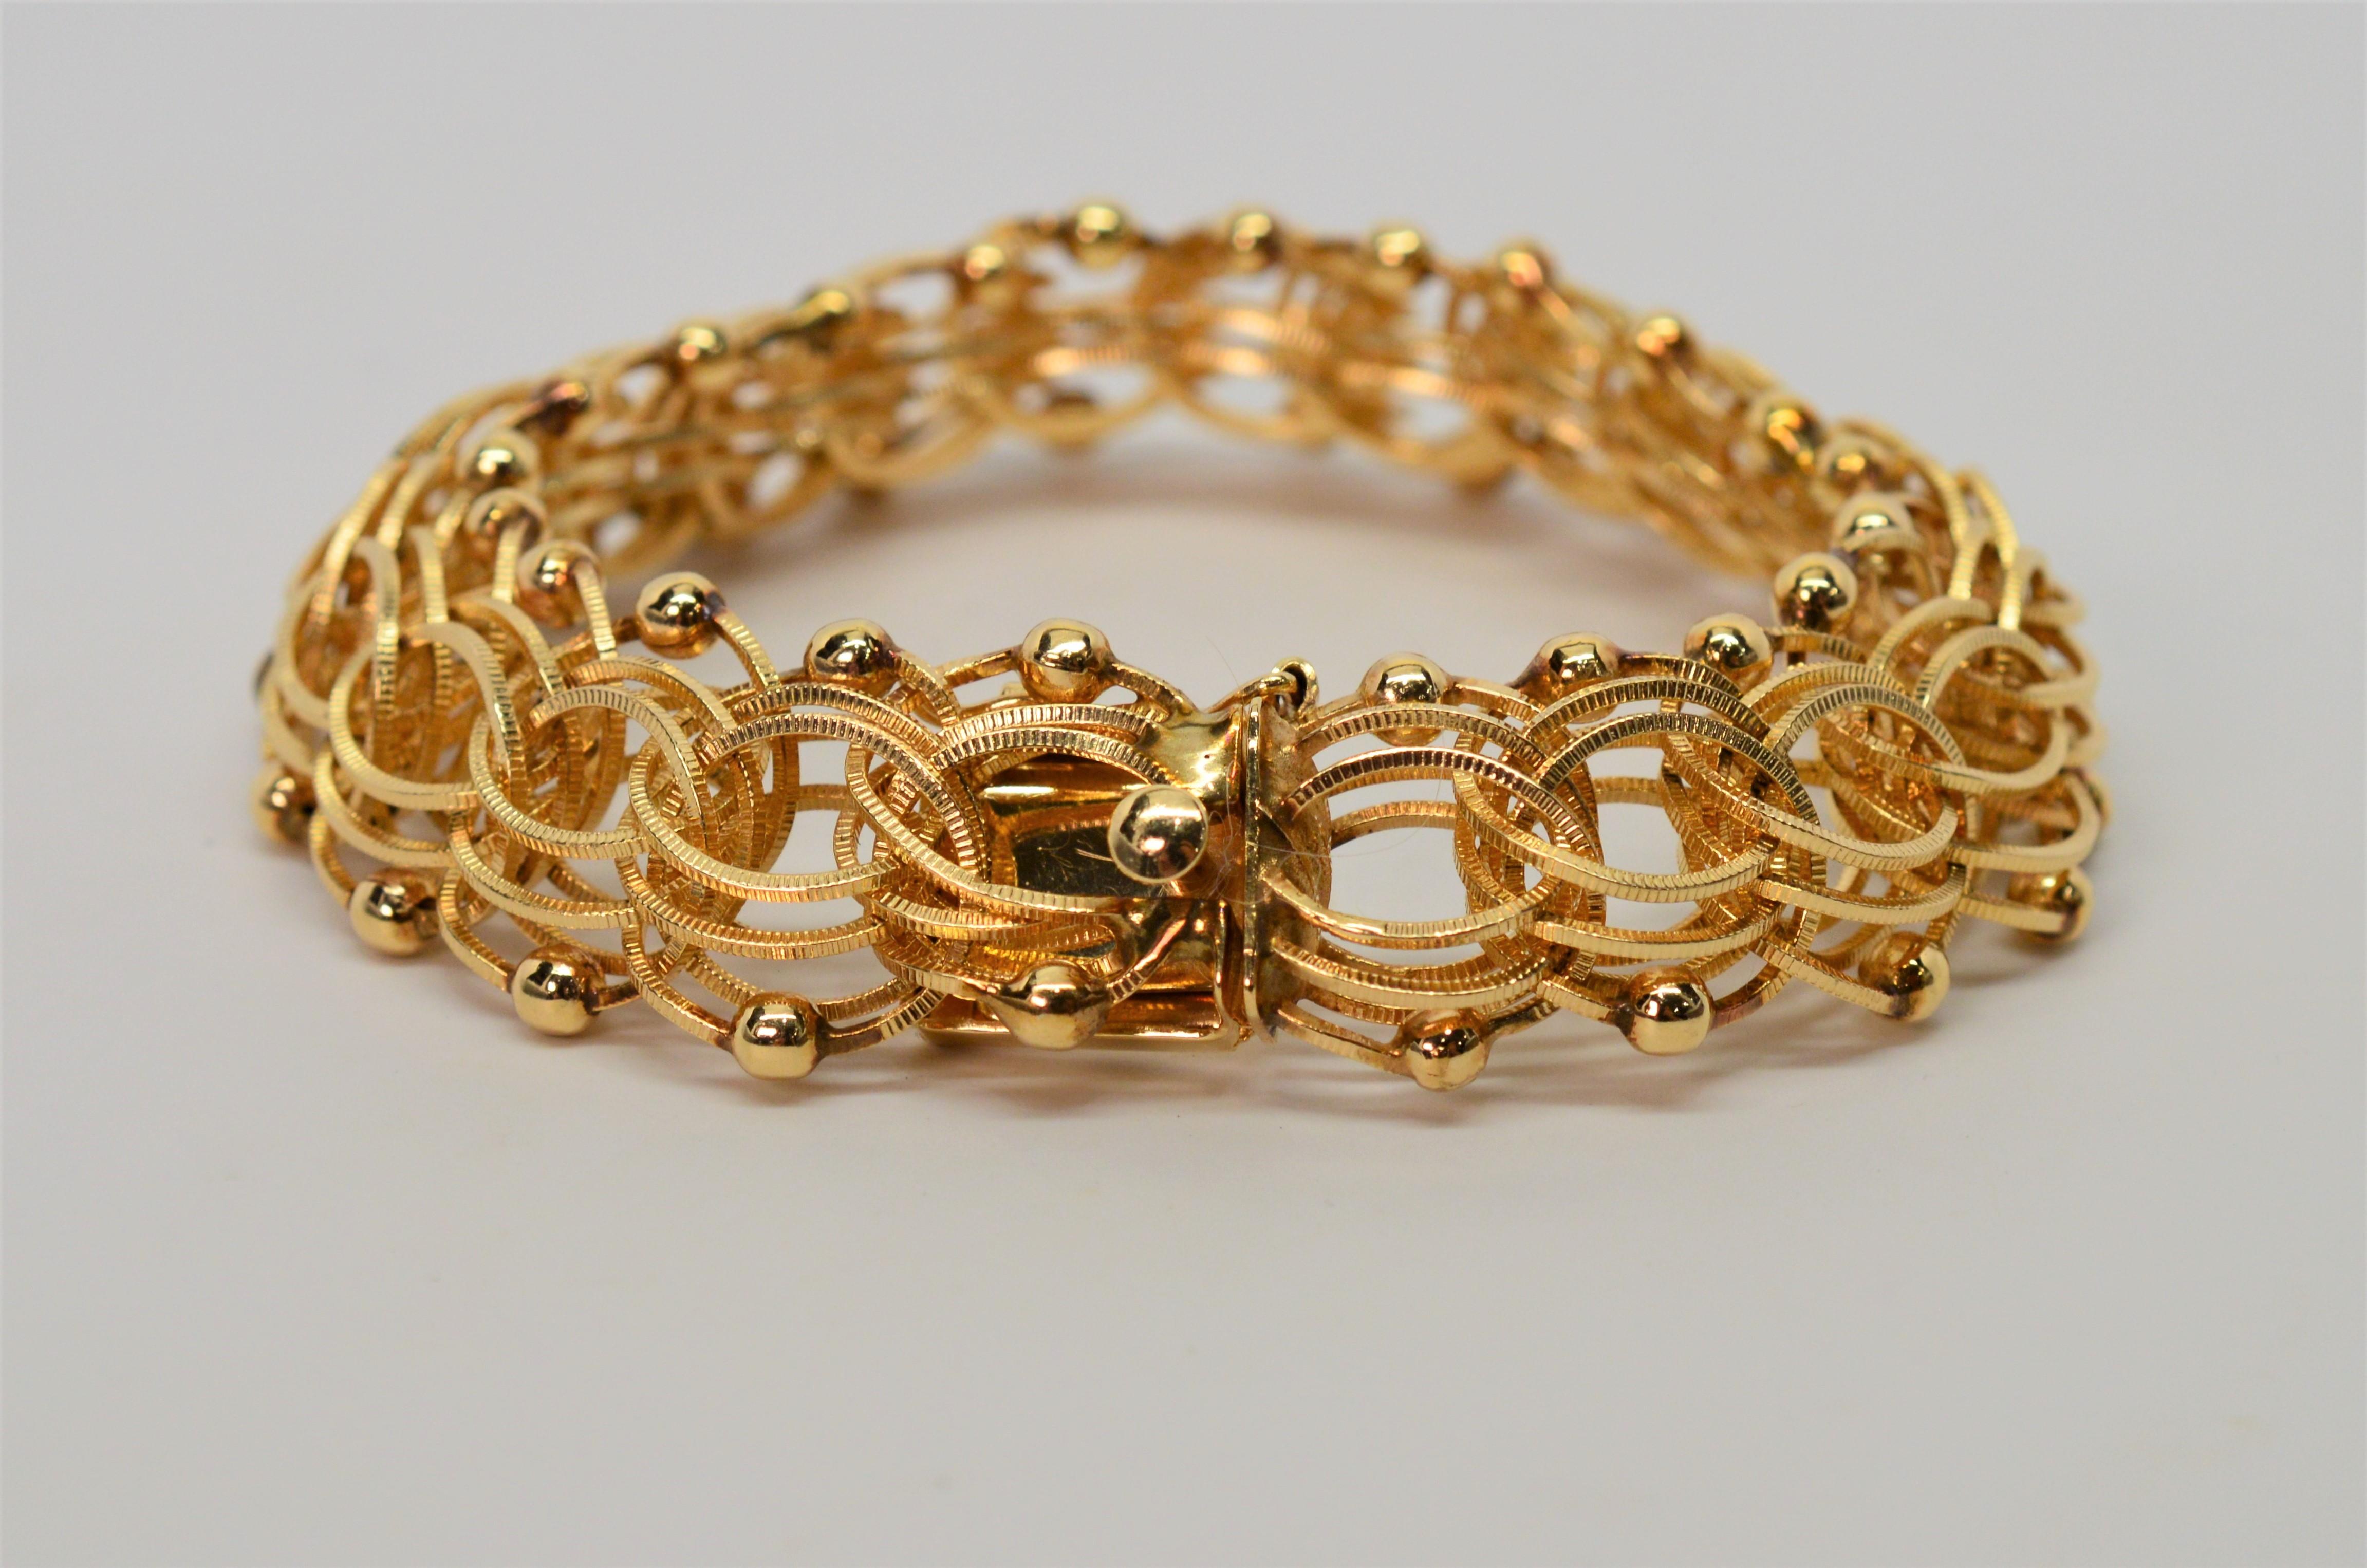 Fein in Handarbeit ca. 1950, diese acht Zoll Armband aus vierzehn Karat 14K Gelbgold ist von einzigartig verflochtenen strukturierten Zentrum Kettenglieder durch eine Grenze von hellen Gold poliert Perlen akzentuiert, was zu einer schönen